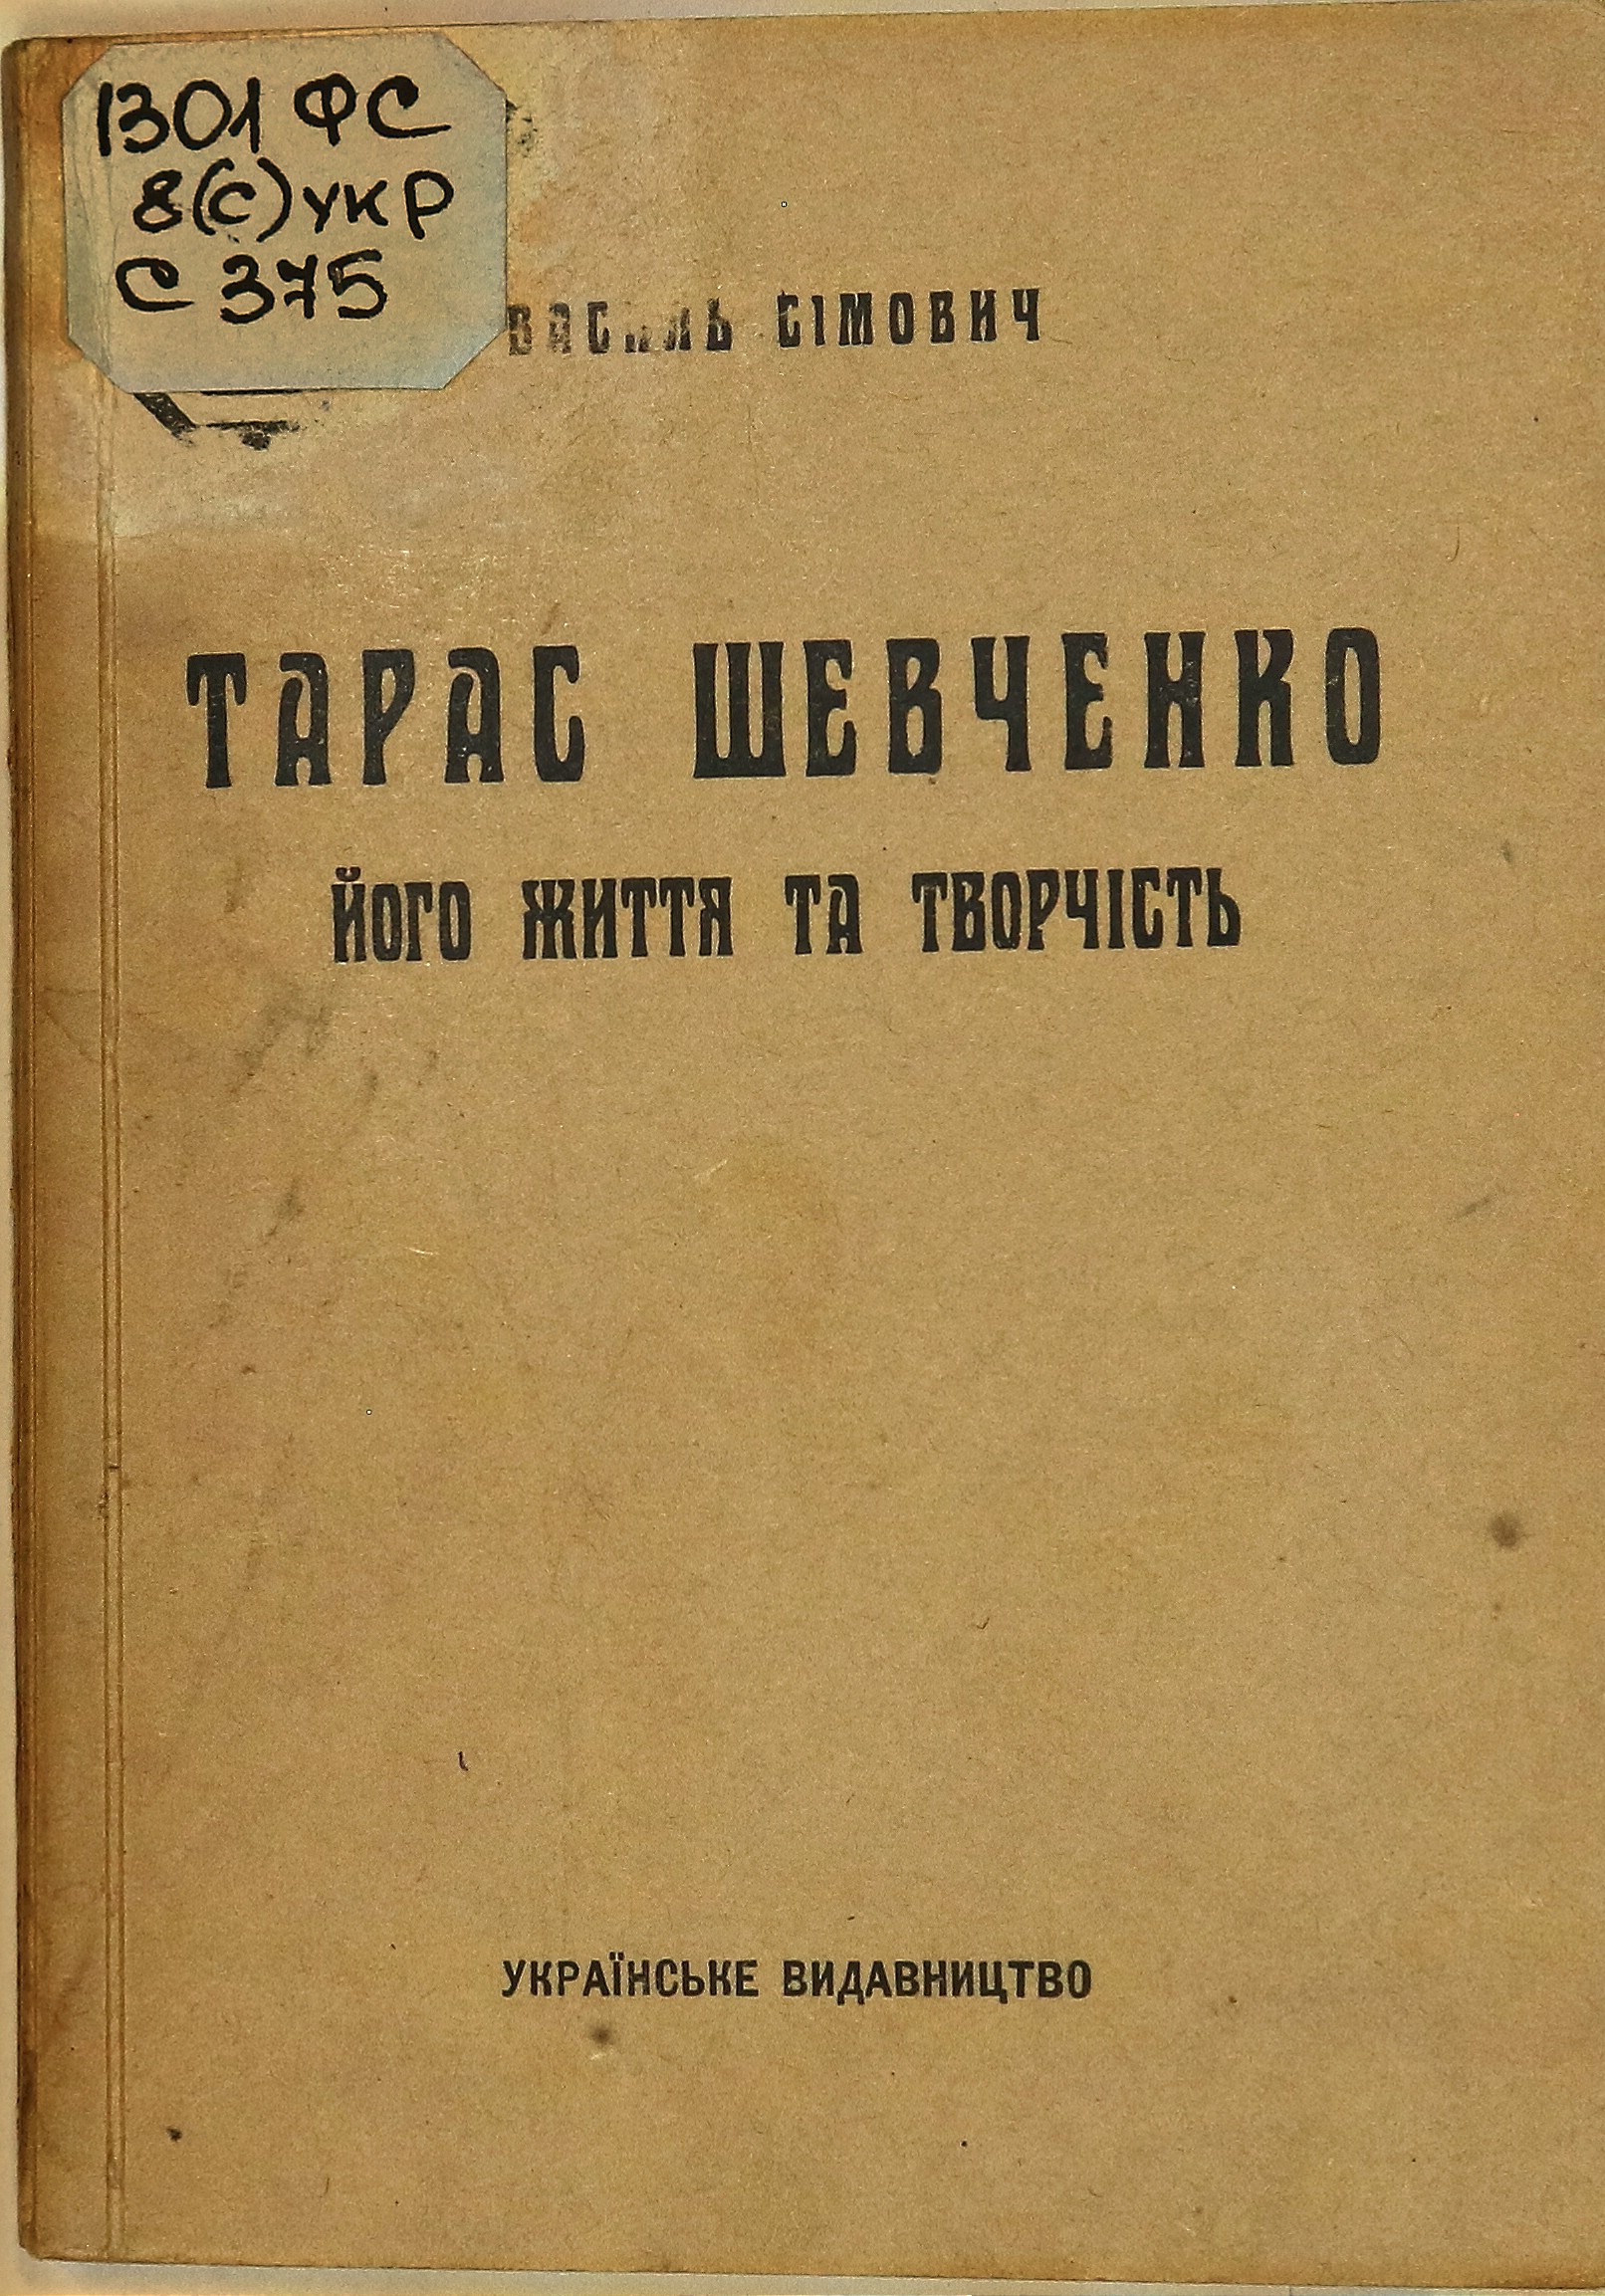 Тарас Шевченко: його життя та творчість